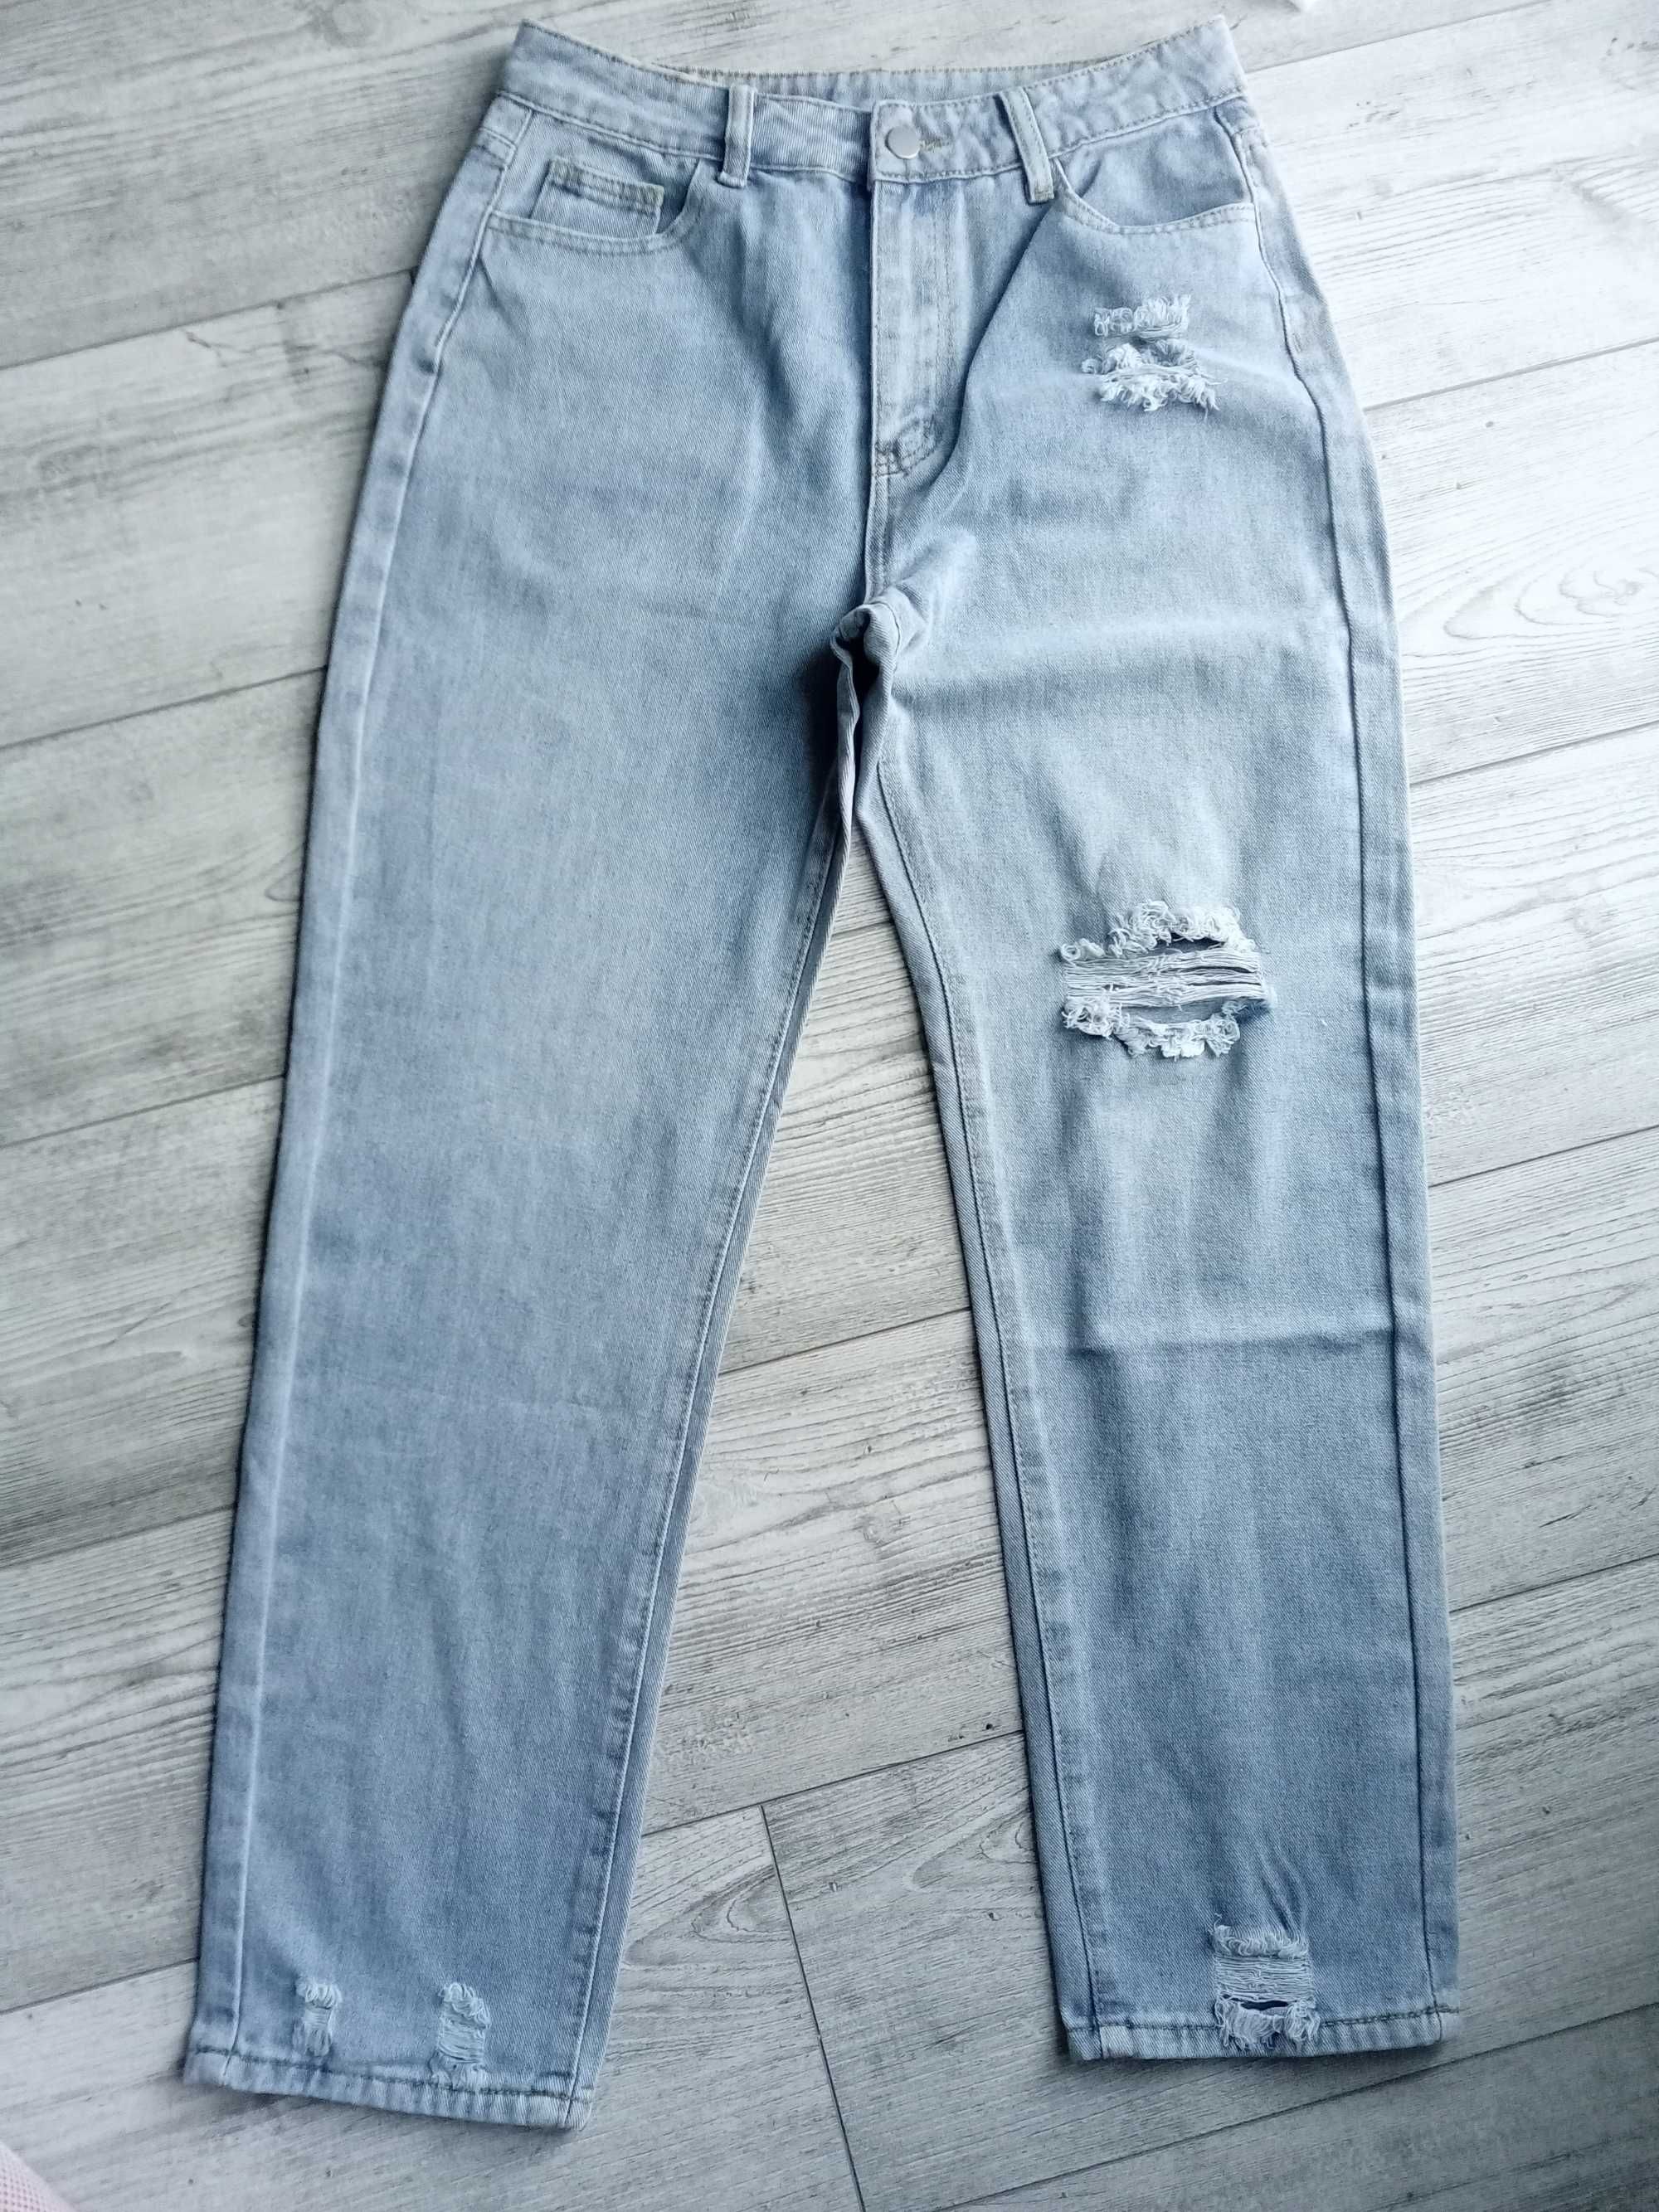 Nowe spodnie dżinsowe damskie r. L 40 szeroka nogawka